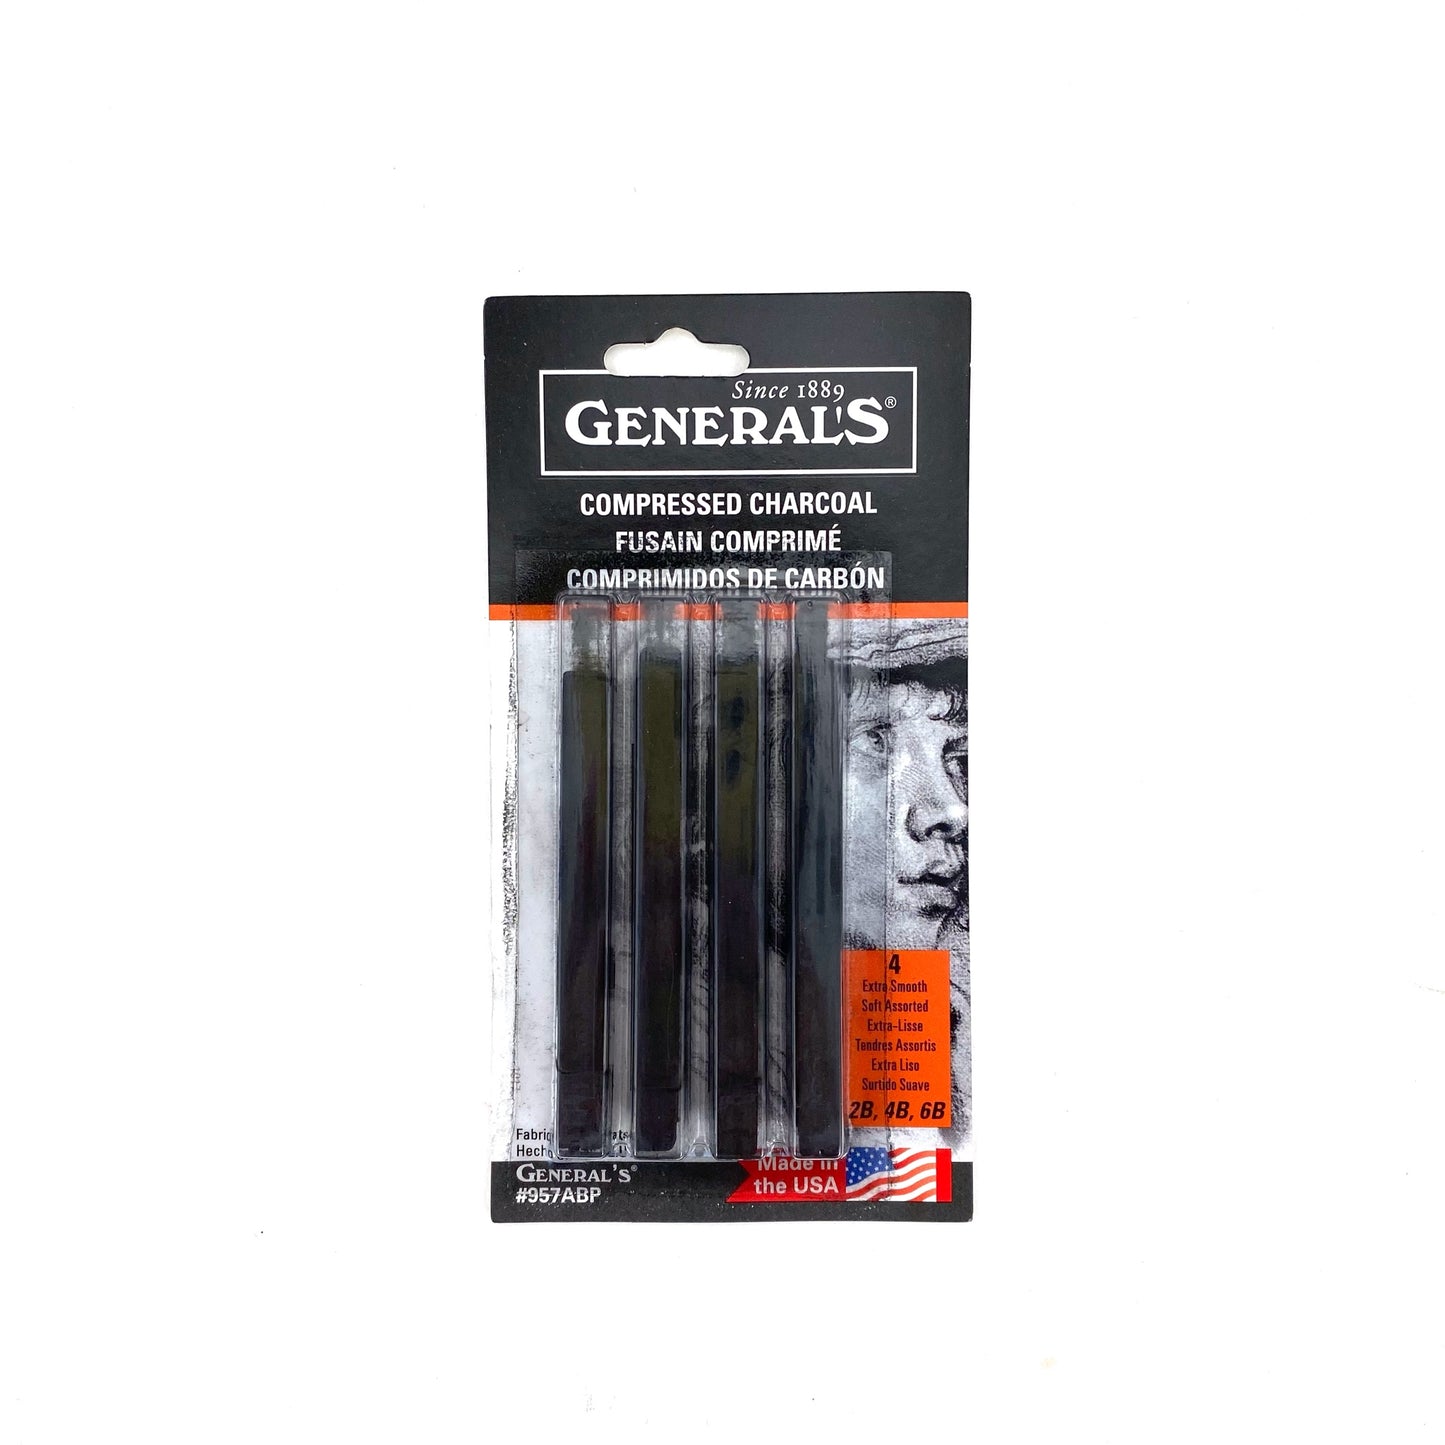 General's Charcoal Pencil - Black, 4b